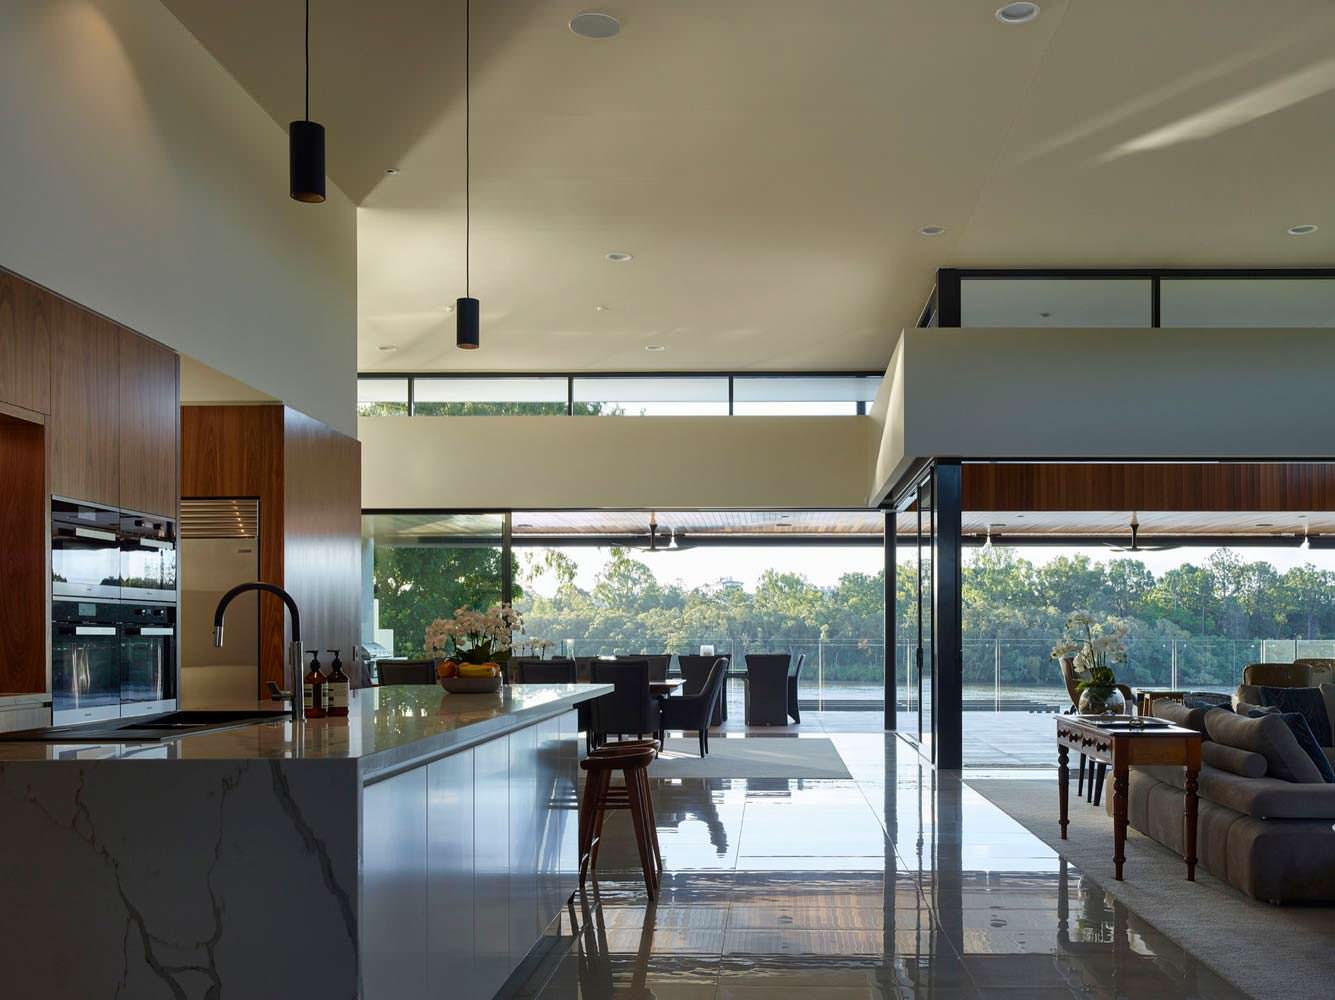 Фото | Кухня в стиле hi-tech. Проект Ellivo Architects